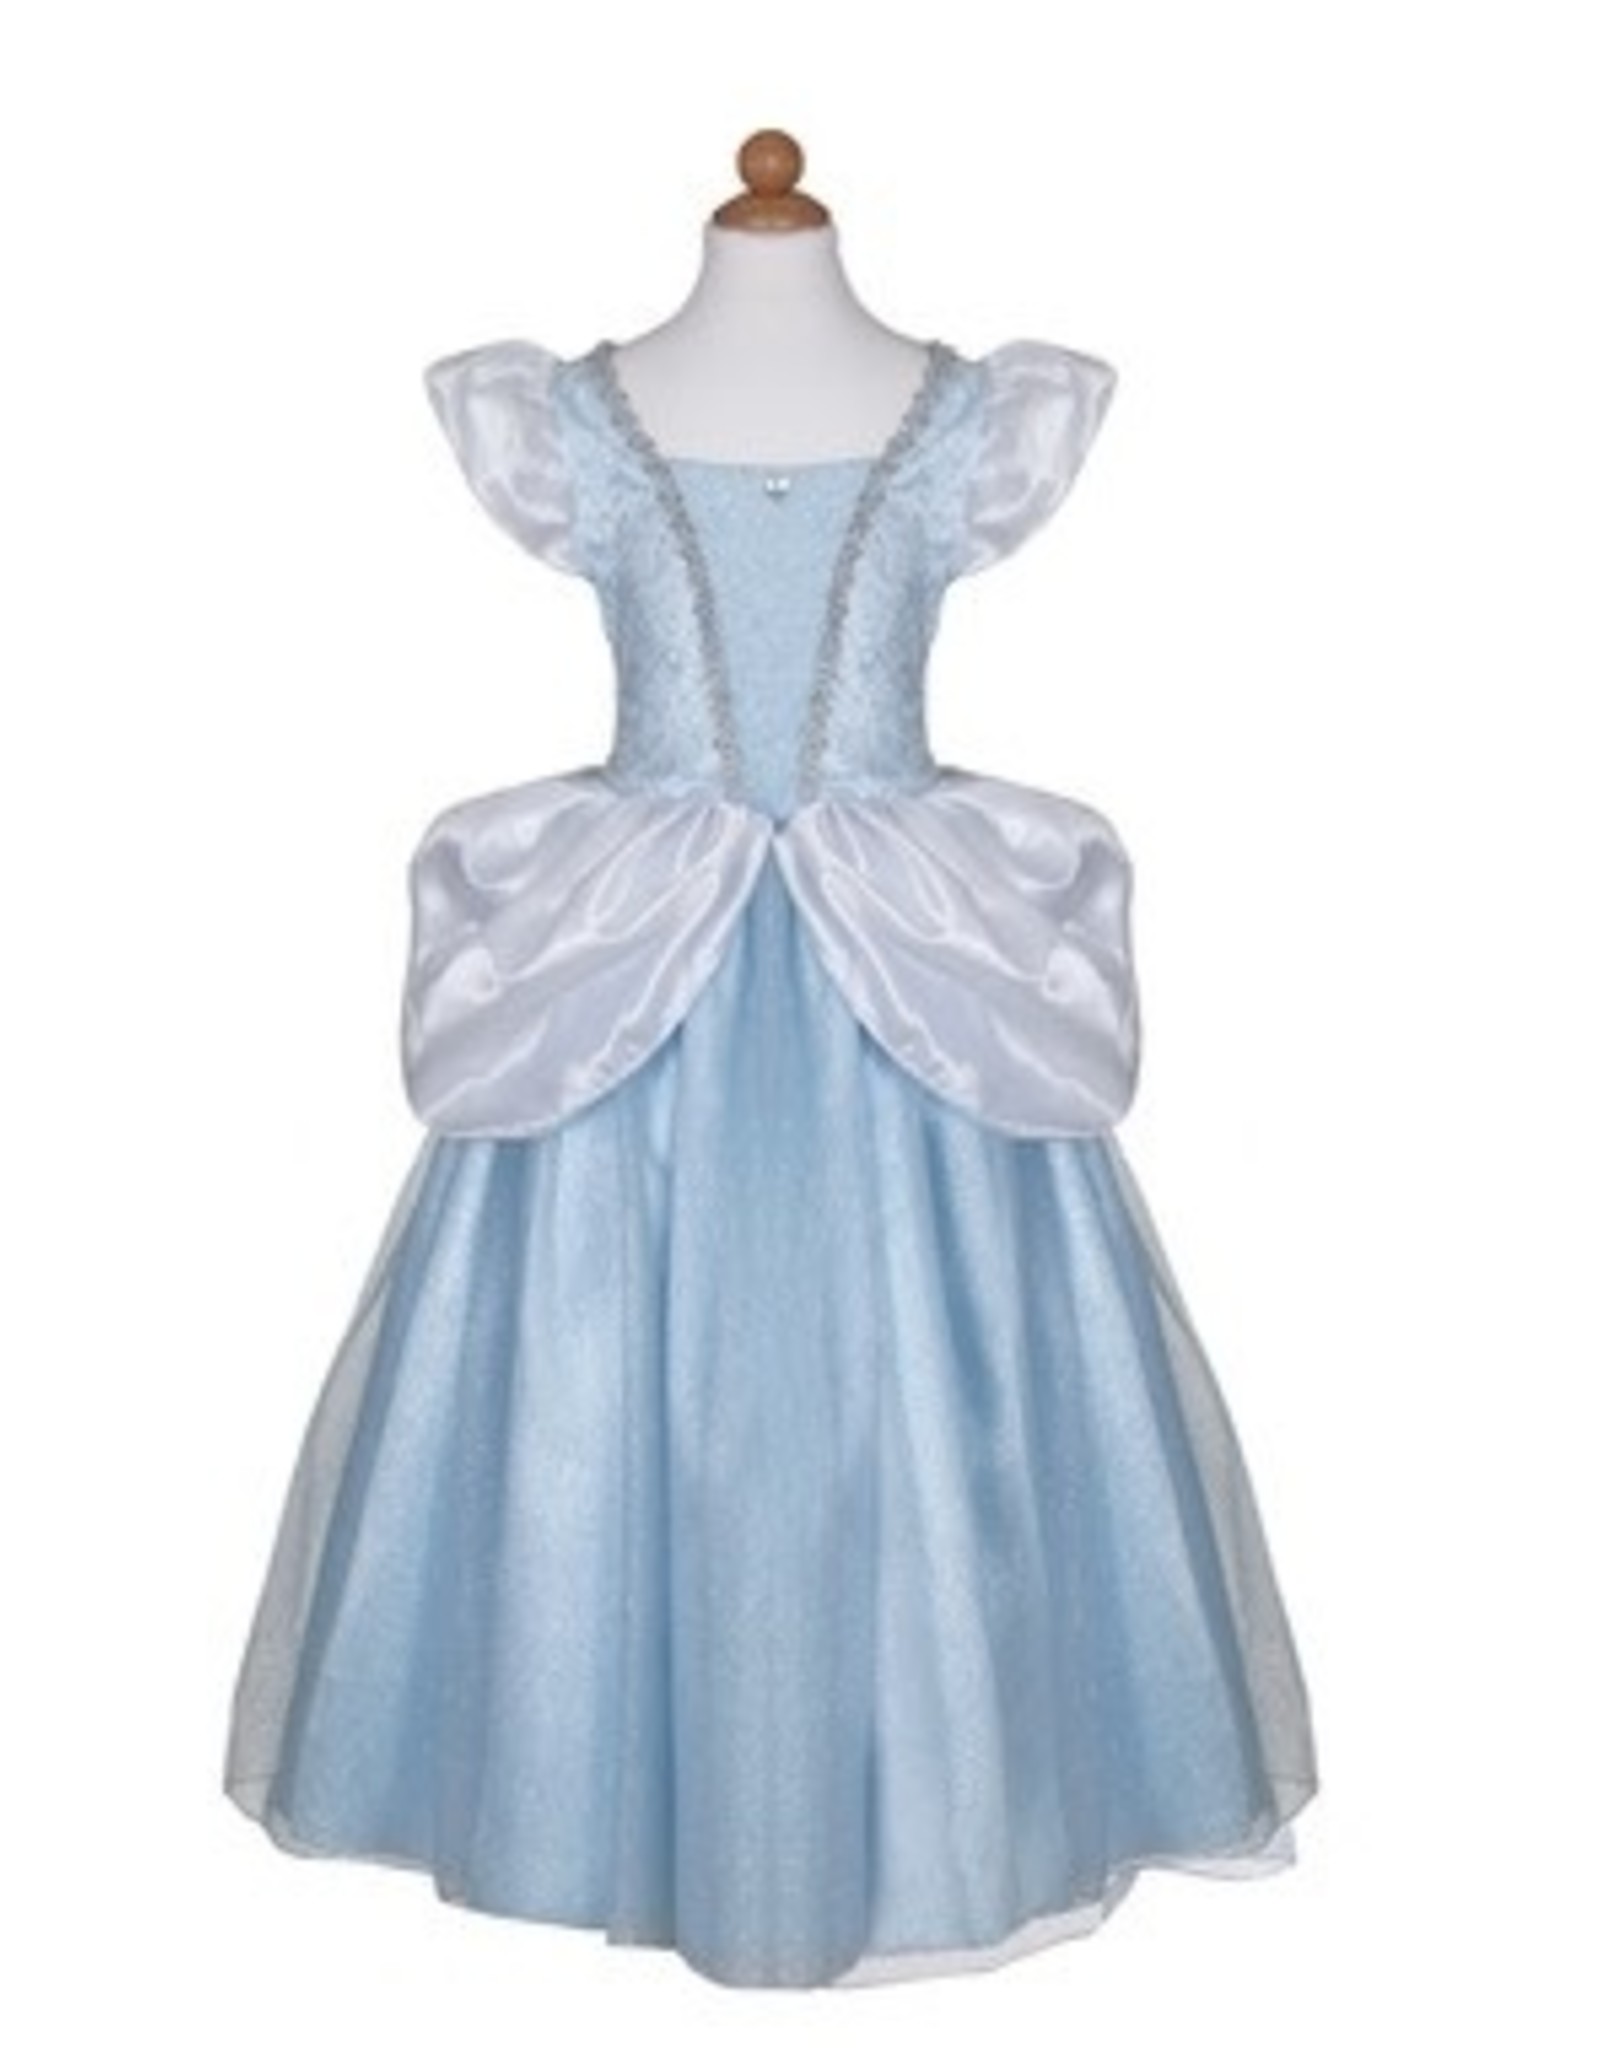 Great Pretenders Deluxe Cinderella Gown, Size 3-4